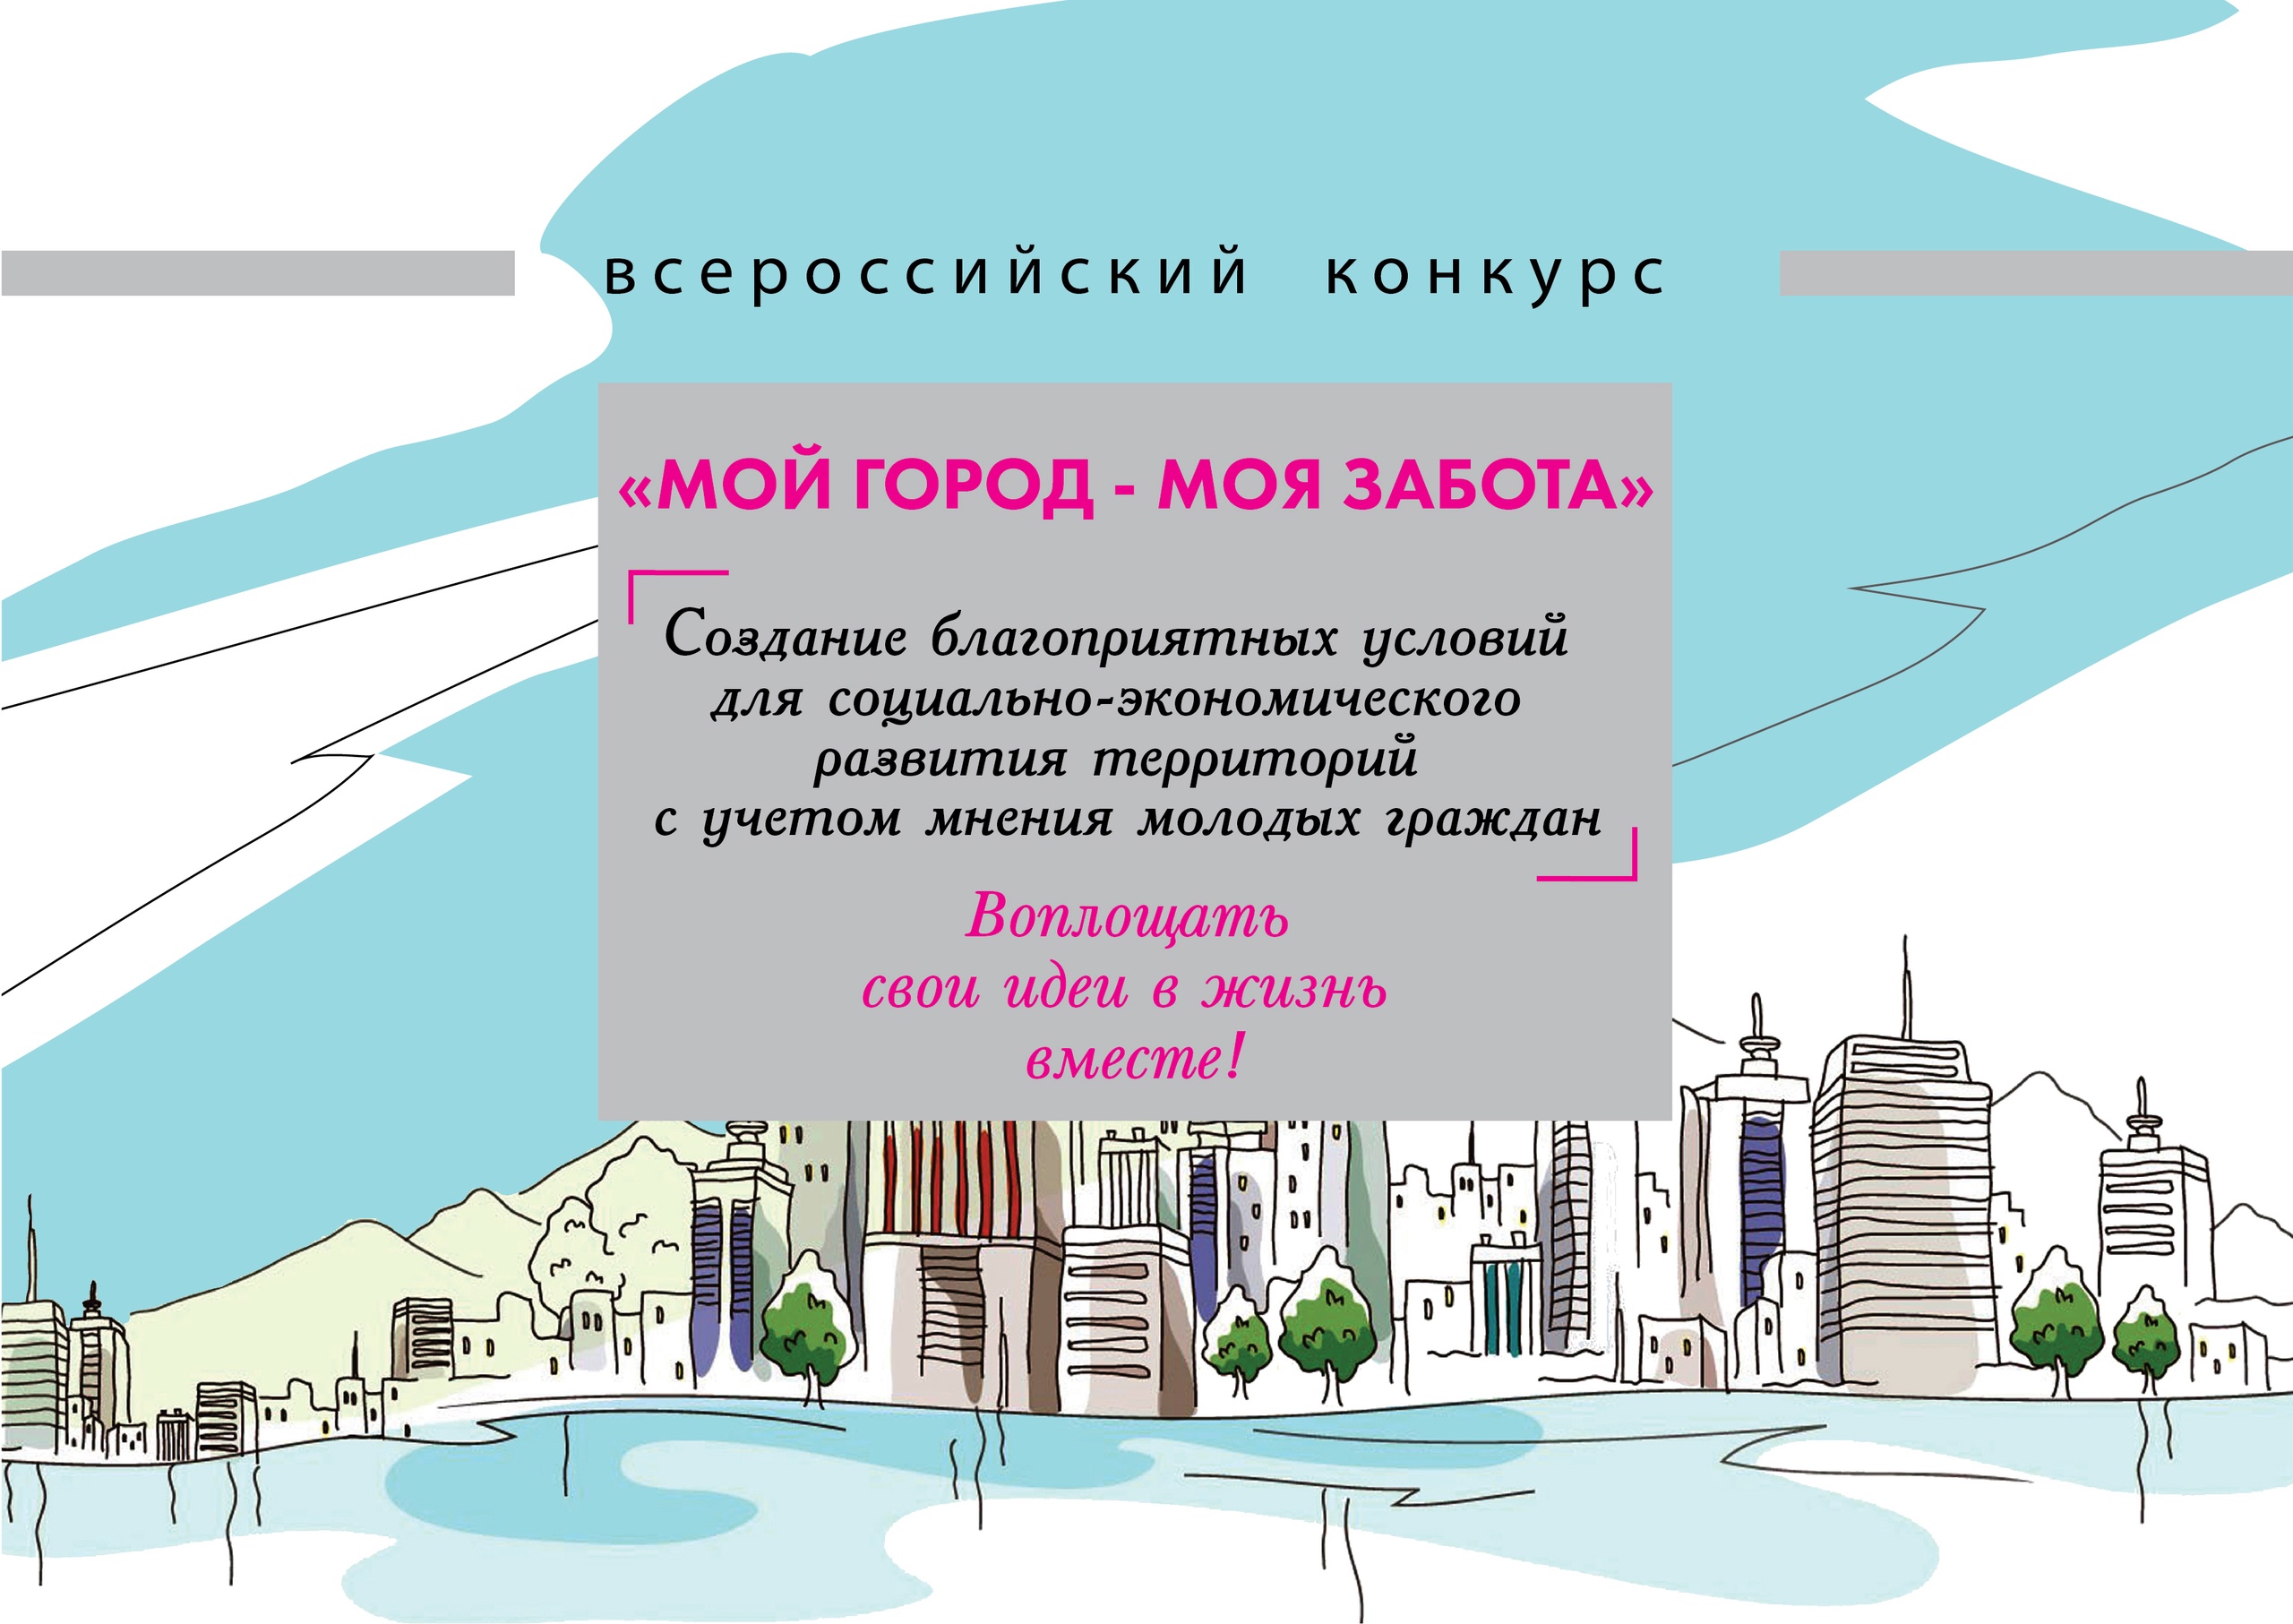 О проведении всероссийского конкурса «Мой город - моя забота»